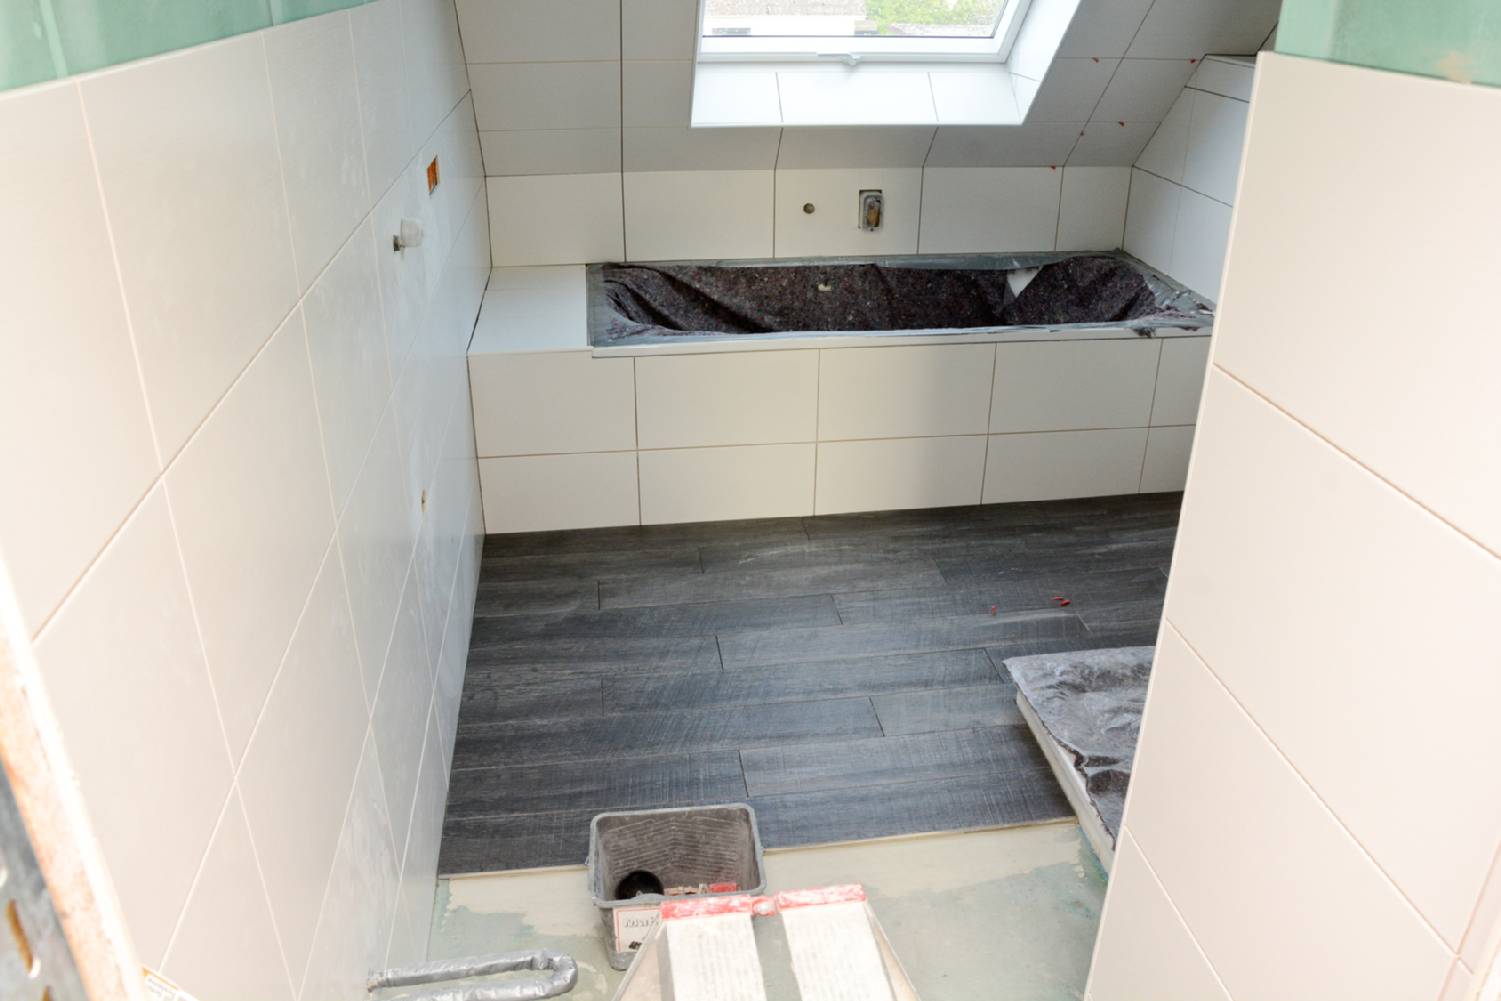 Fliesenspiegel in der Küche, Wand und Boden in Bad und WC, alternativer Bodenbelag